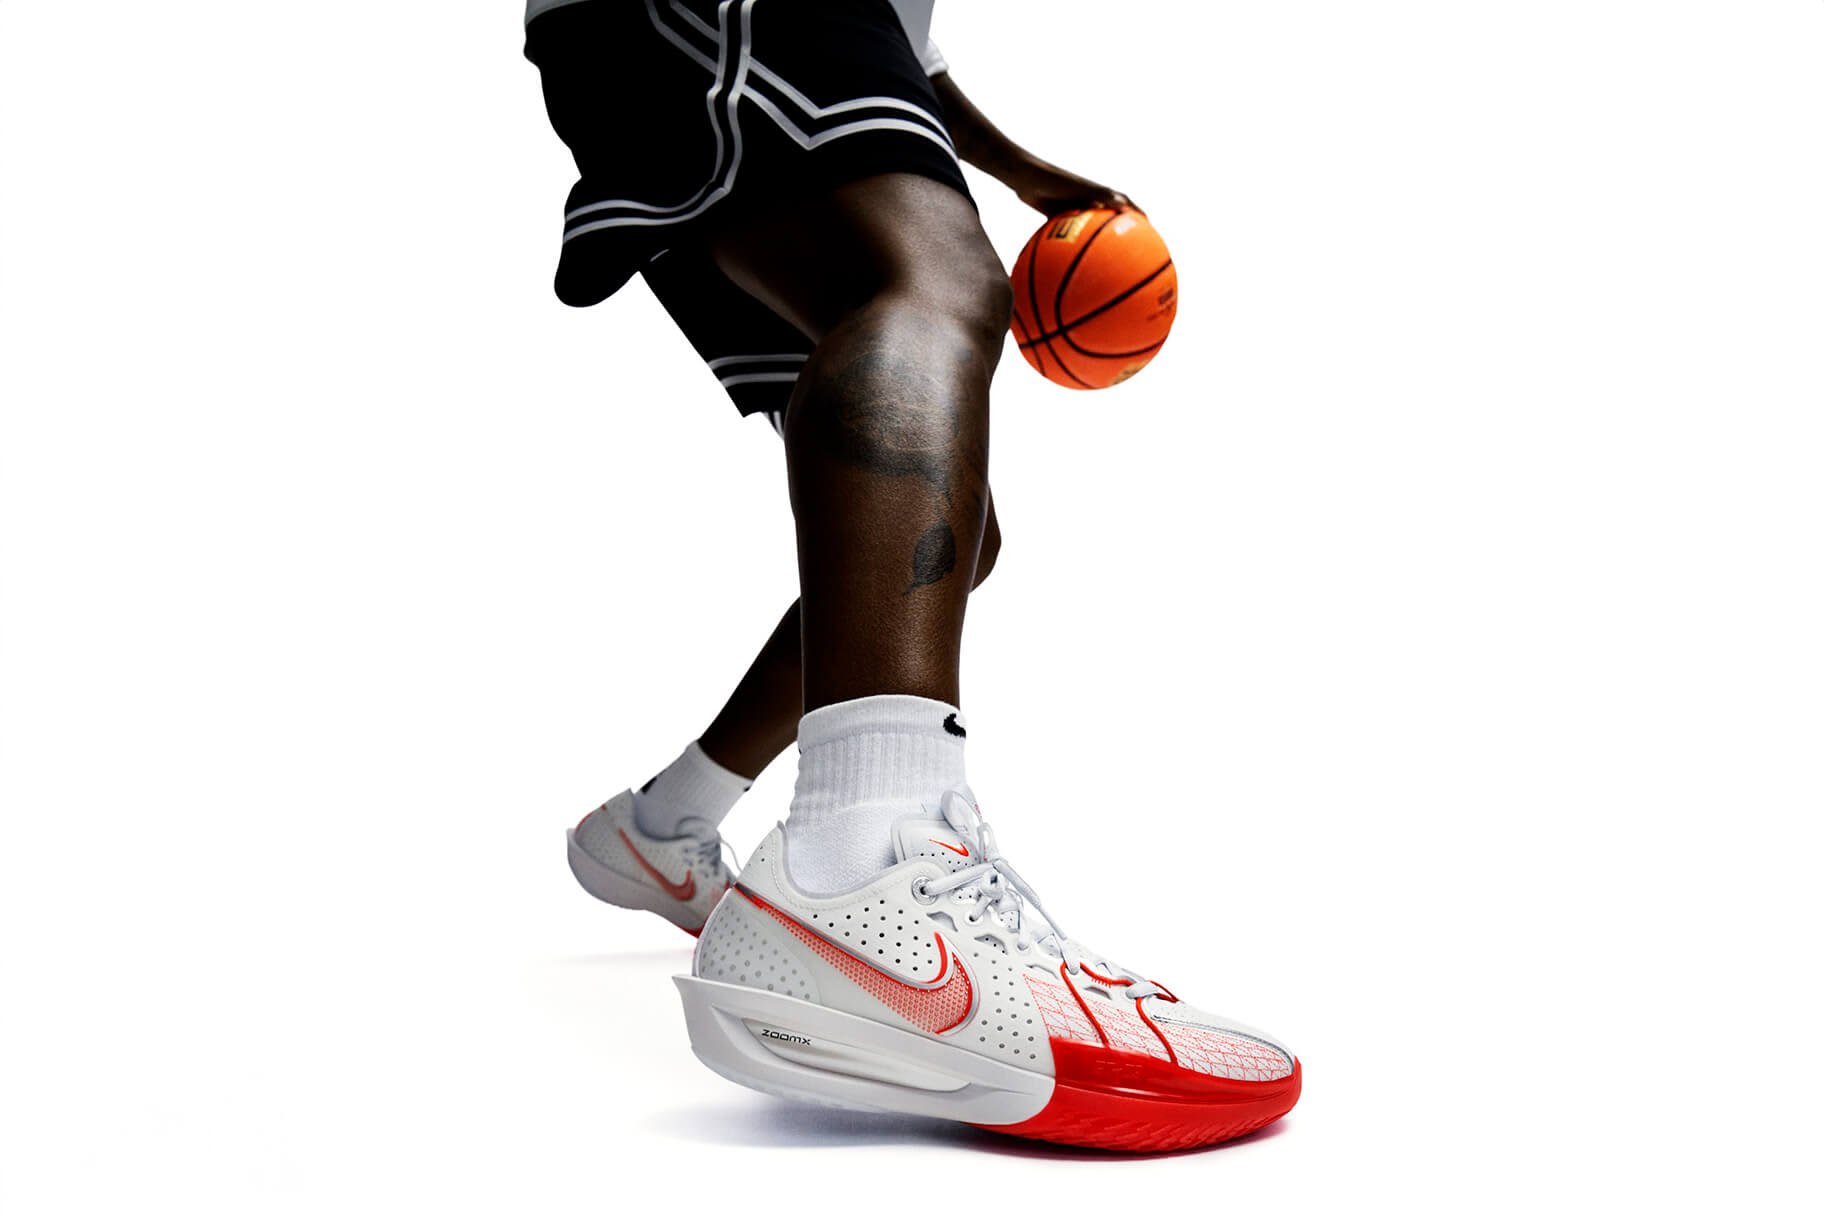 Nike porta l'innovativa tecnologia della schiuma ZoomX sui campi da basket con G.T. Cut 3